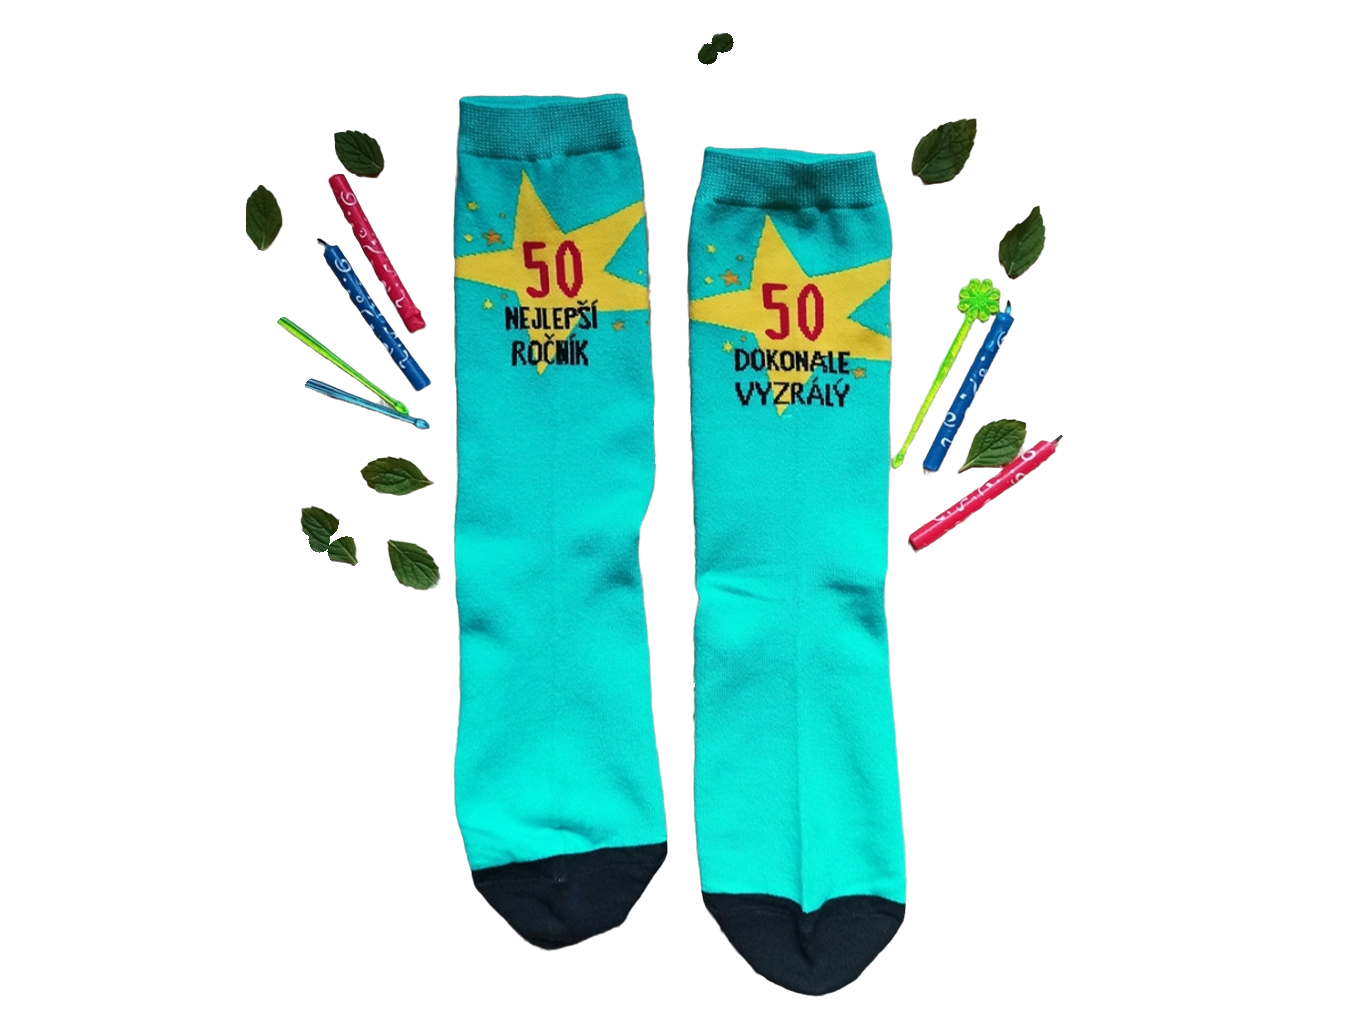 Veselé ponožky - 50 Nejlepší ročník 39-42